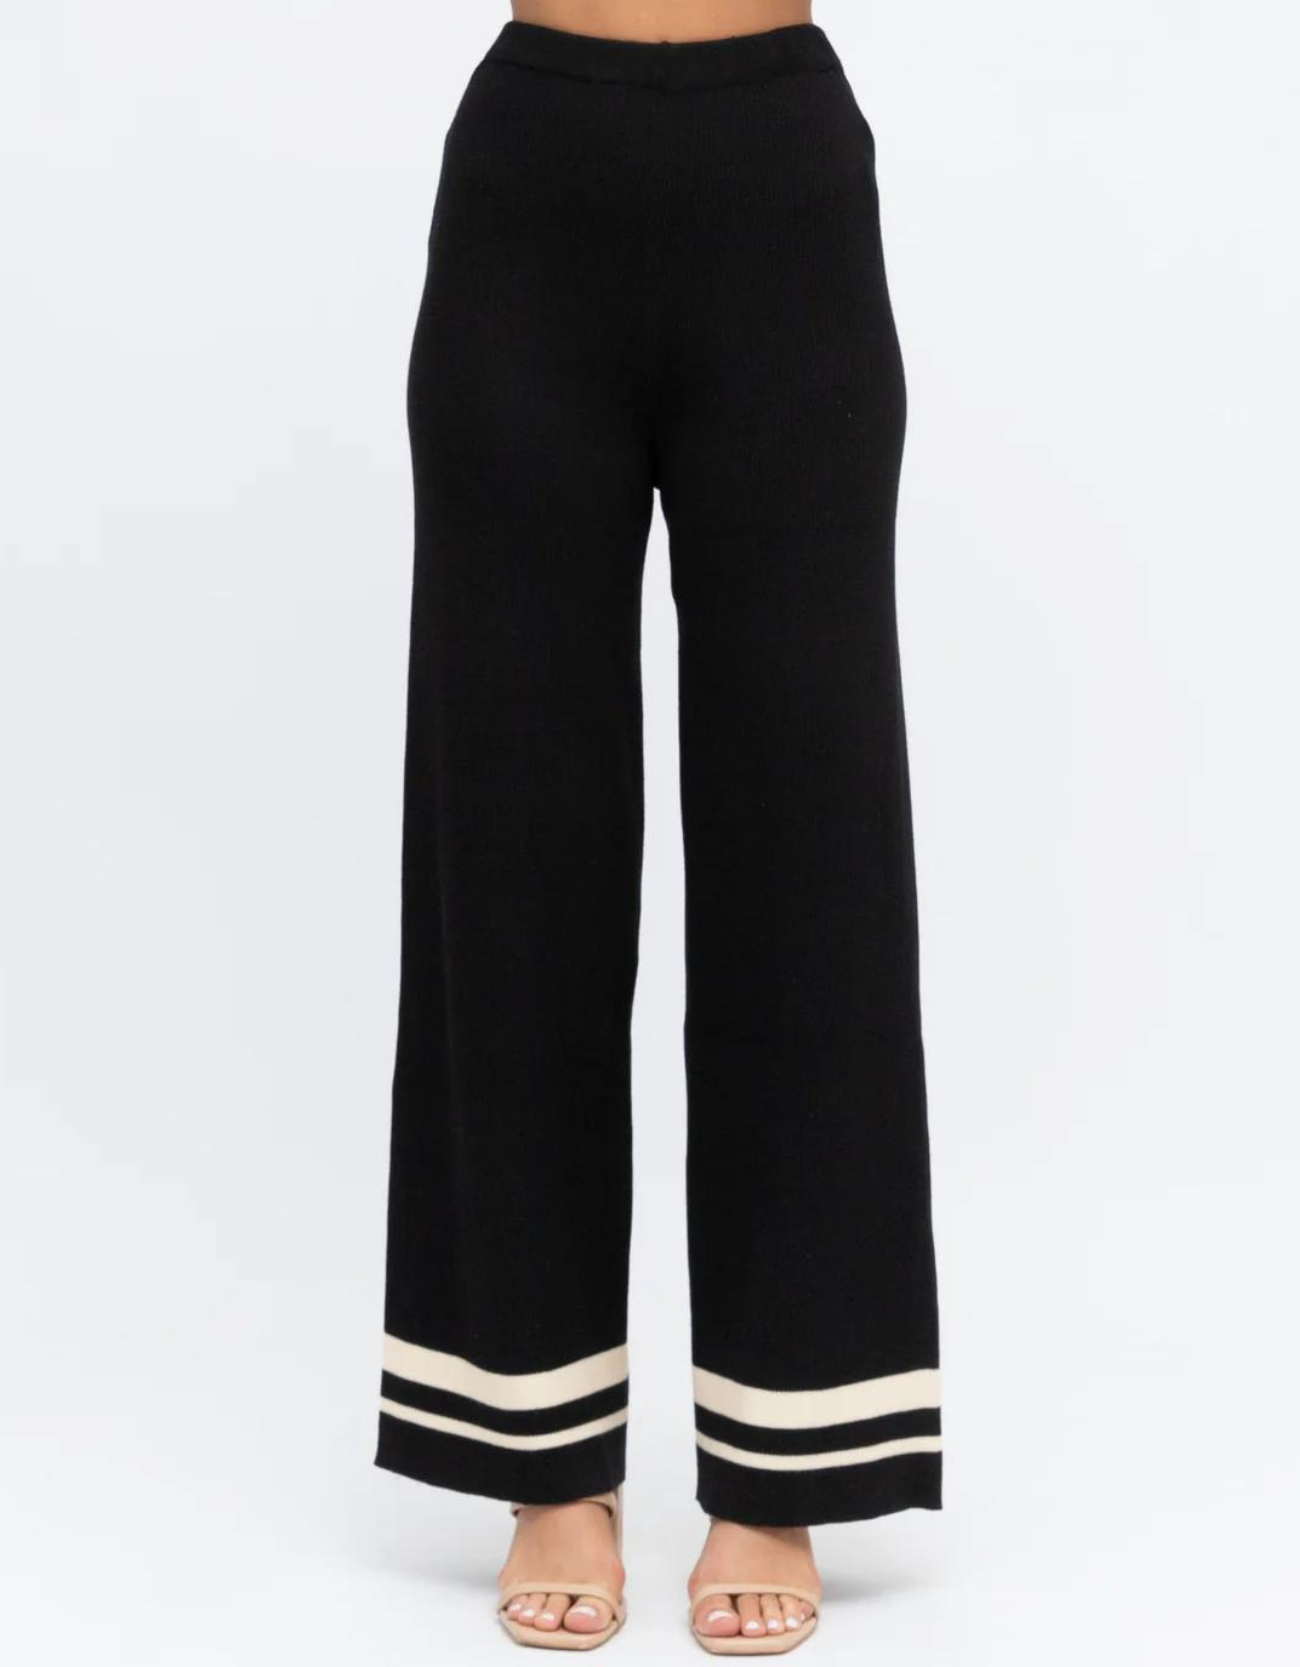 Stripe Knit Pant-Black/Off White